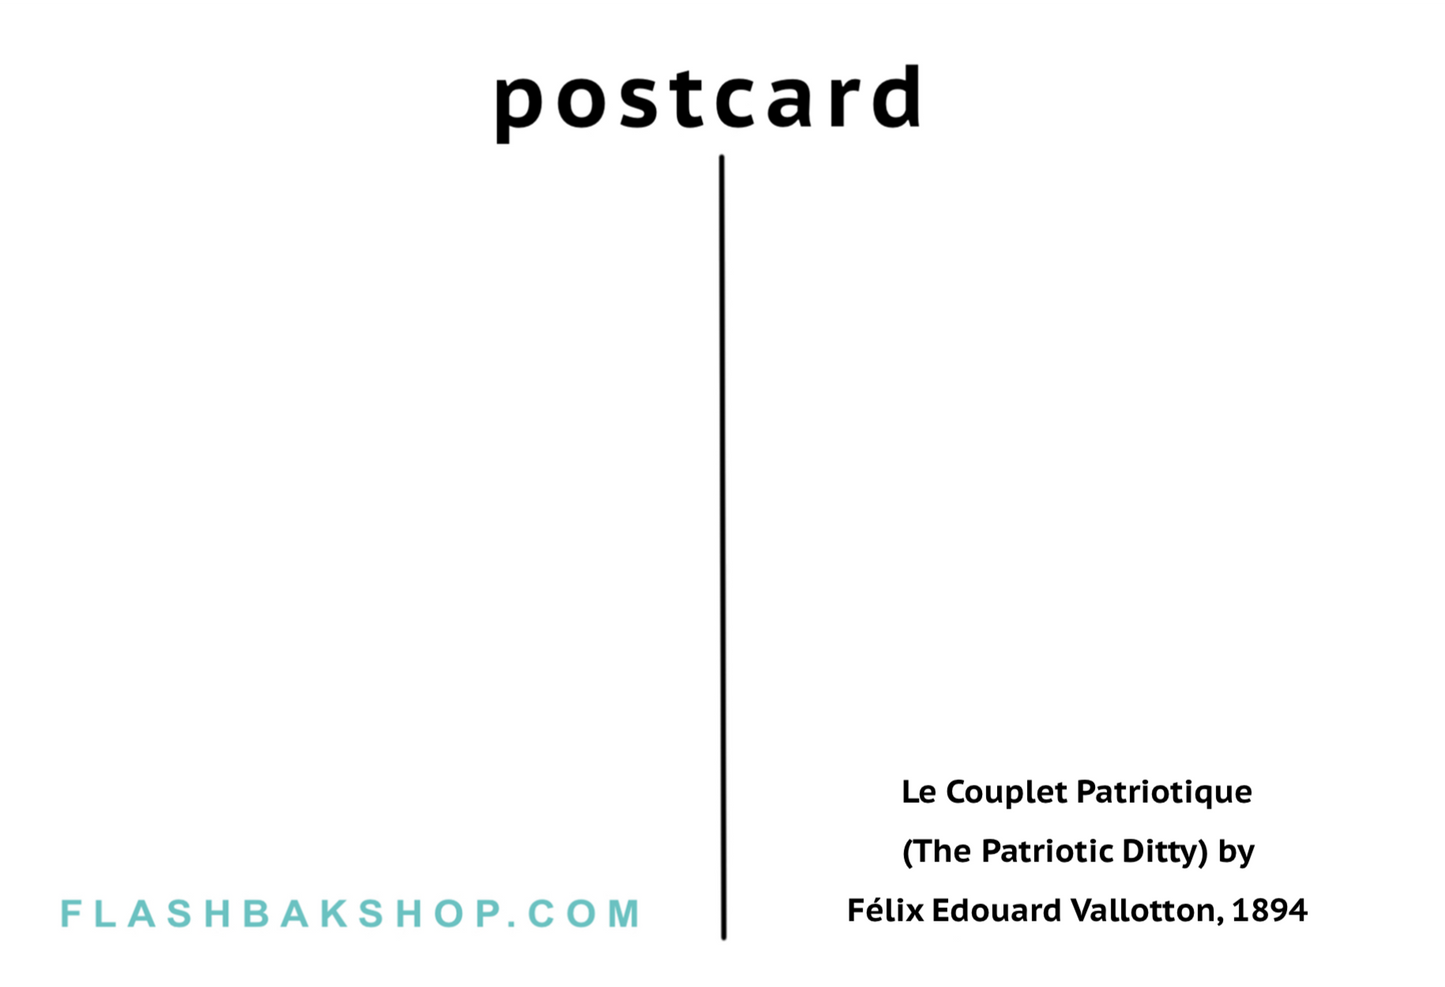 Le Couplet Patriotique de Félix Edouard Vallotton, 1894 - Carte postale